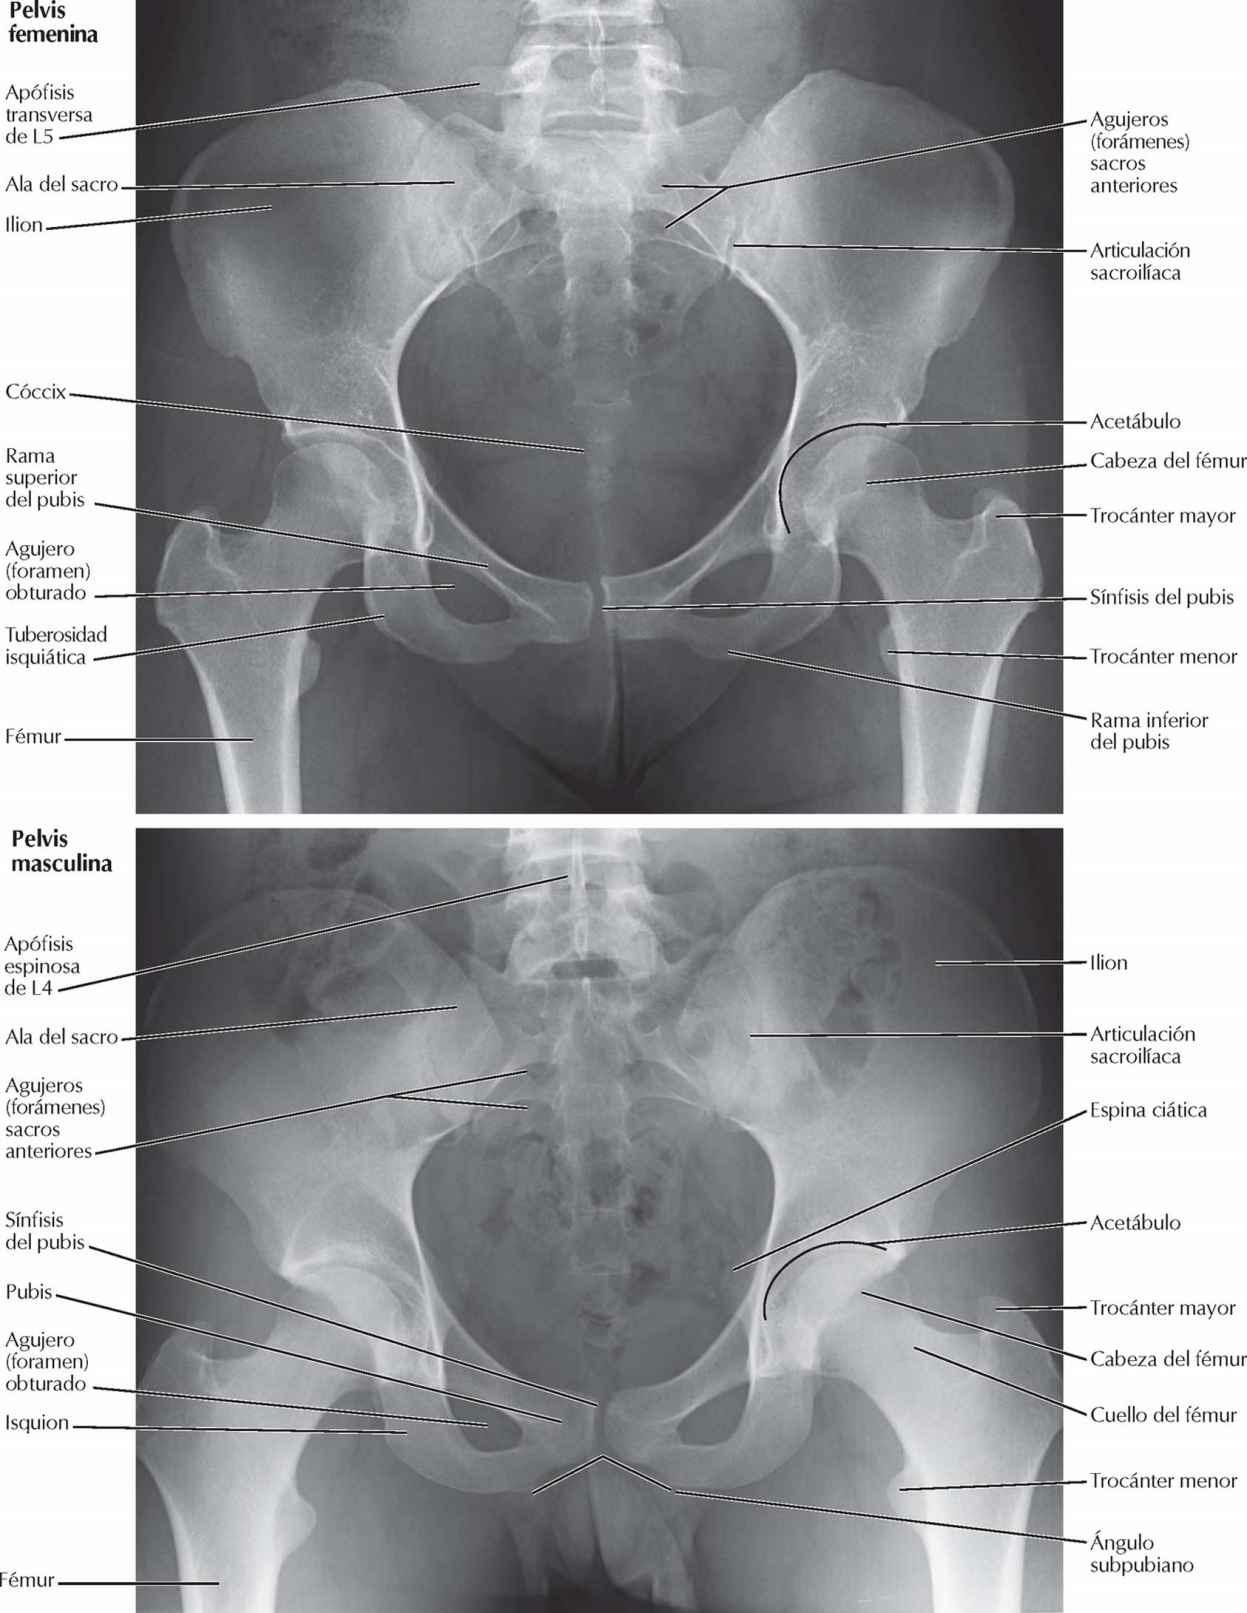 Radiografías de la pelvis: femenina y masculina